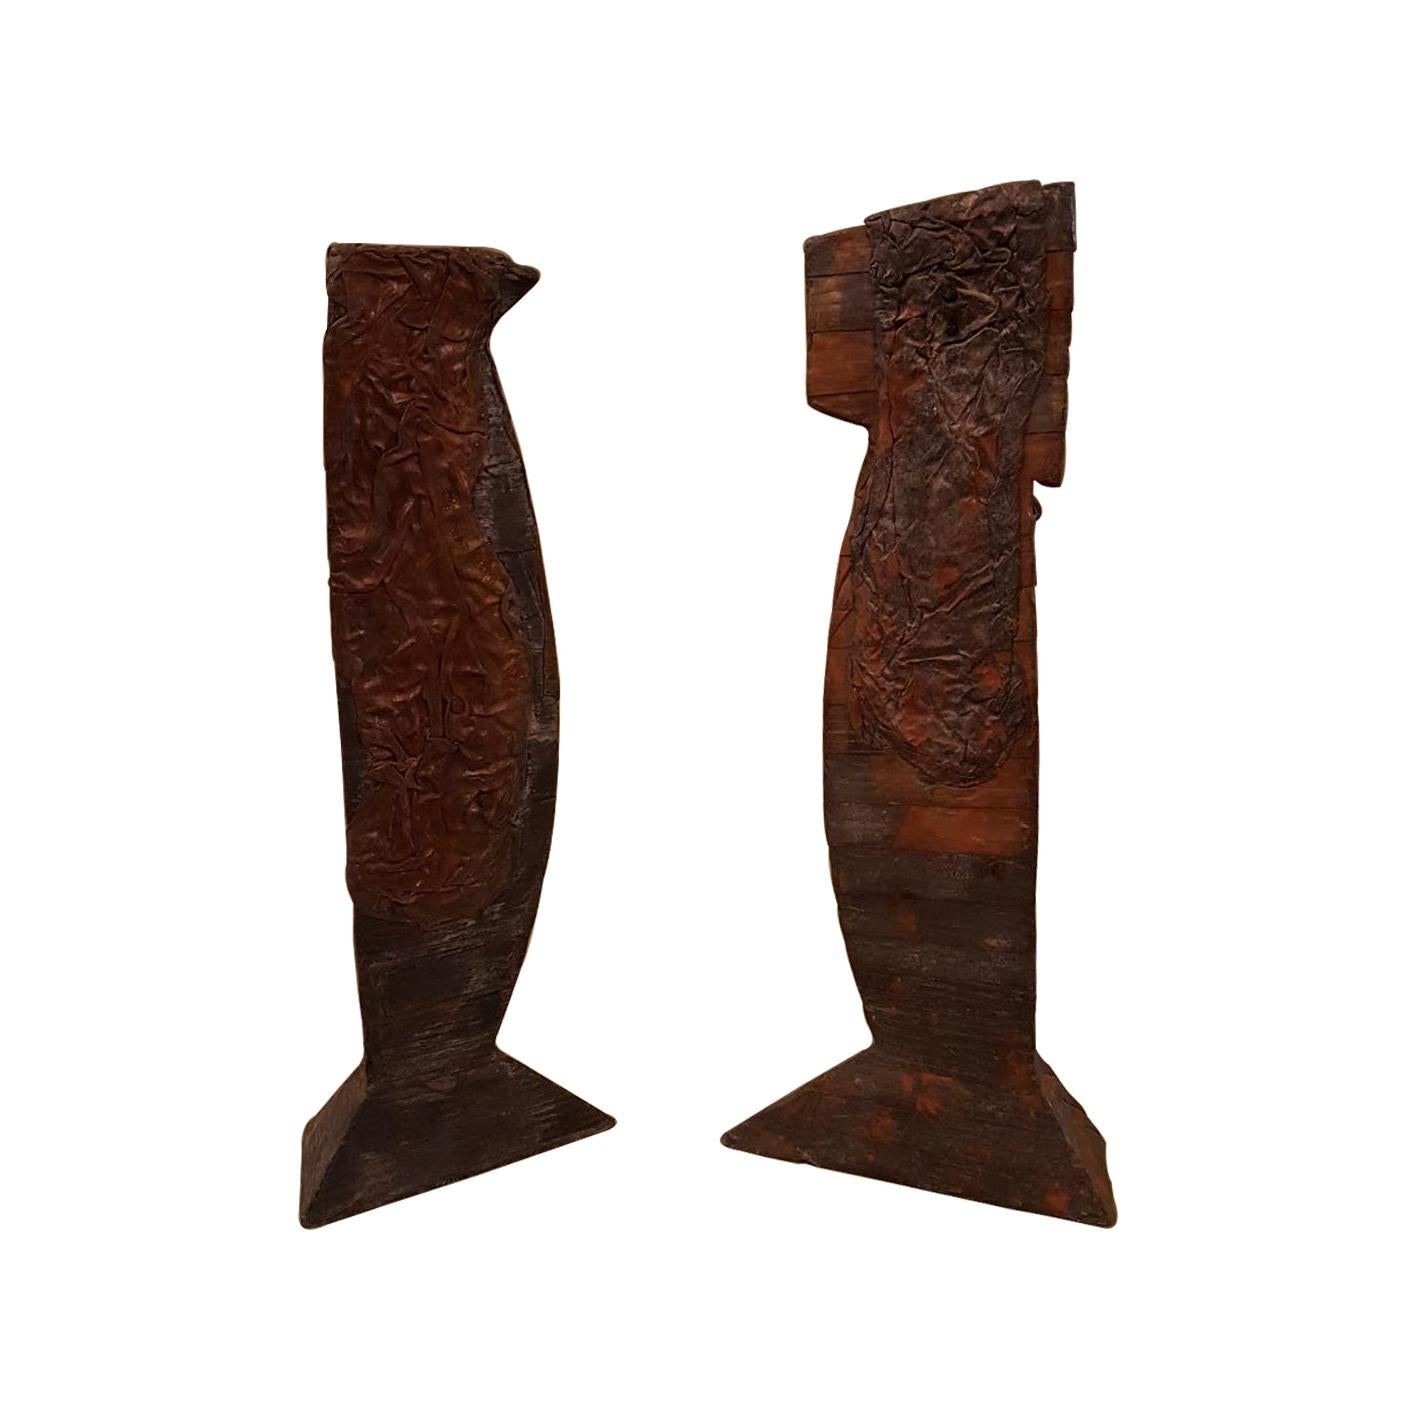 Christopher Schumaker Set of 2 Wood, Lead and Bronze Sculptures